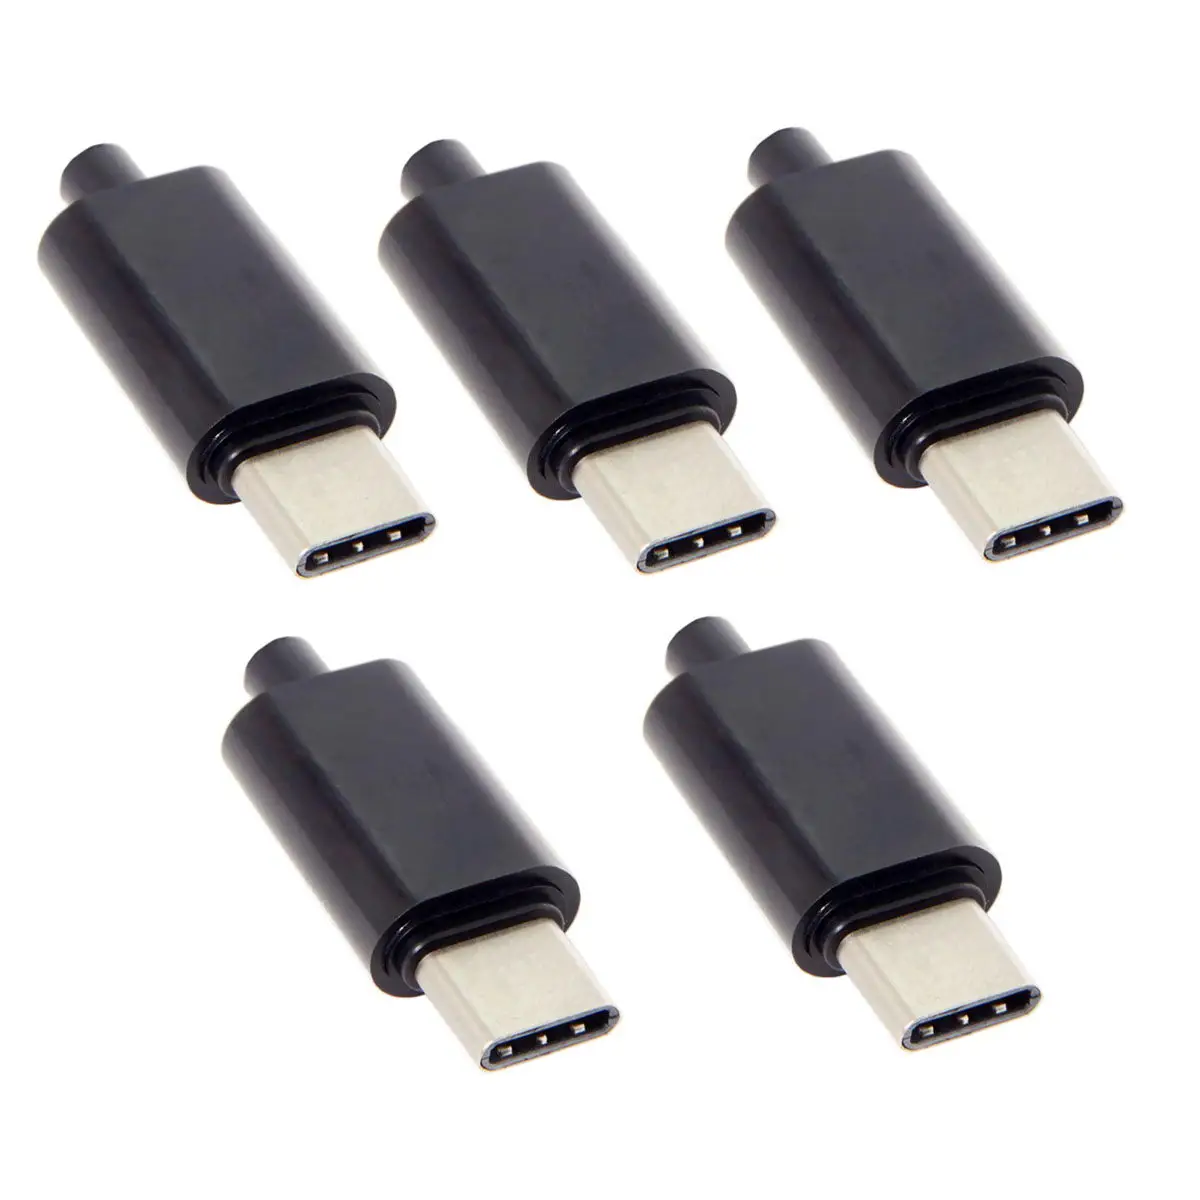 Zihan 5 шт./лот OTG Хост Тип DIY 24pin USB C мужской 1 k резистор с черным корпусом|Кабели